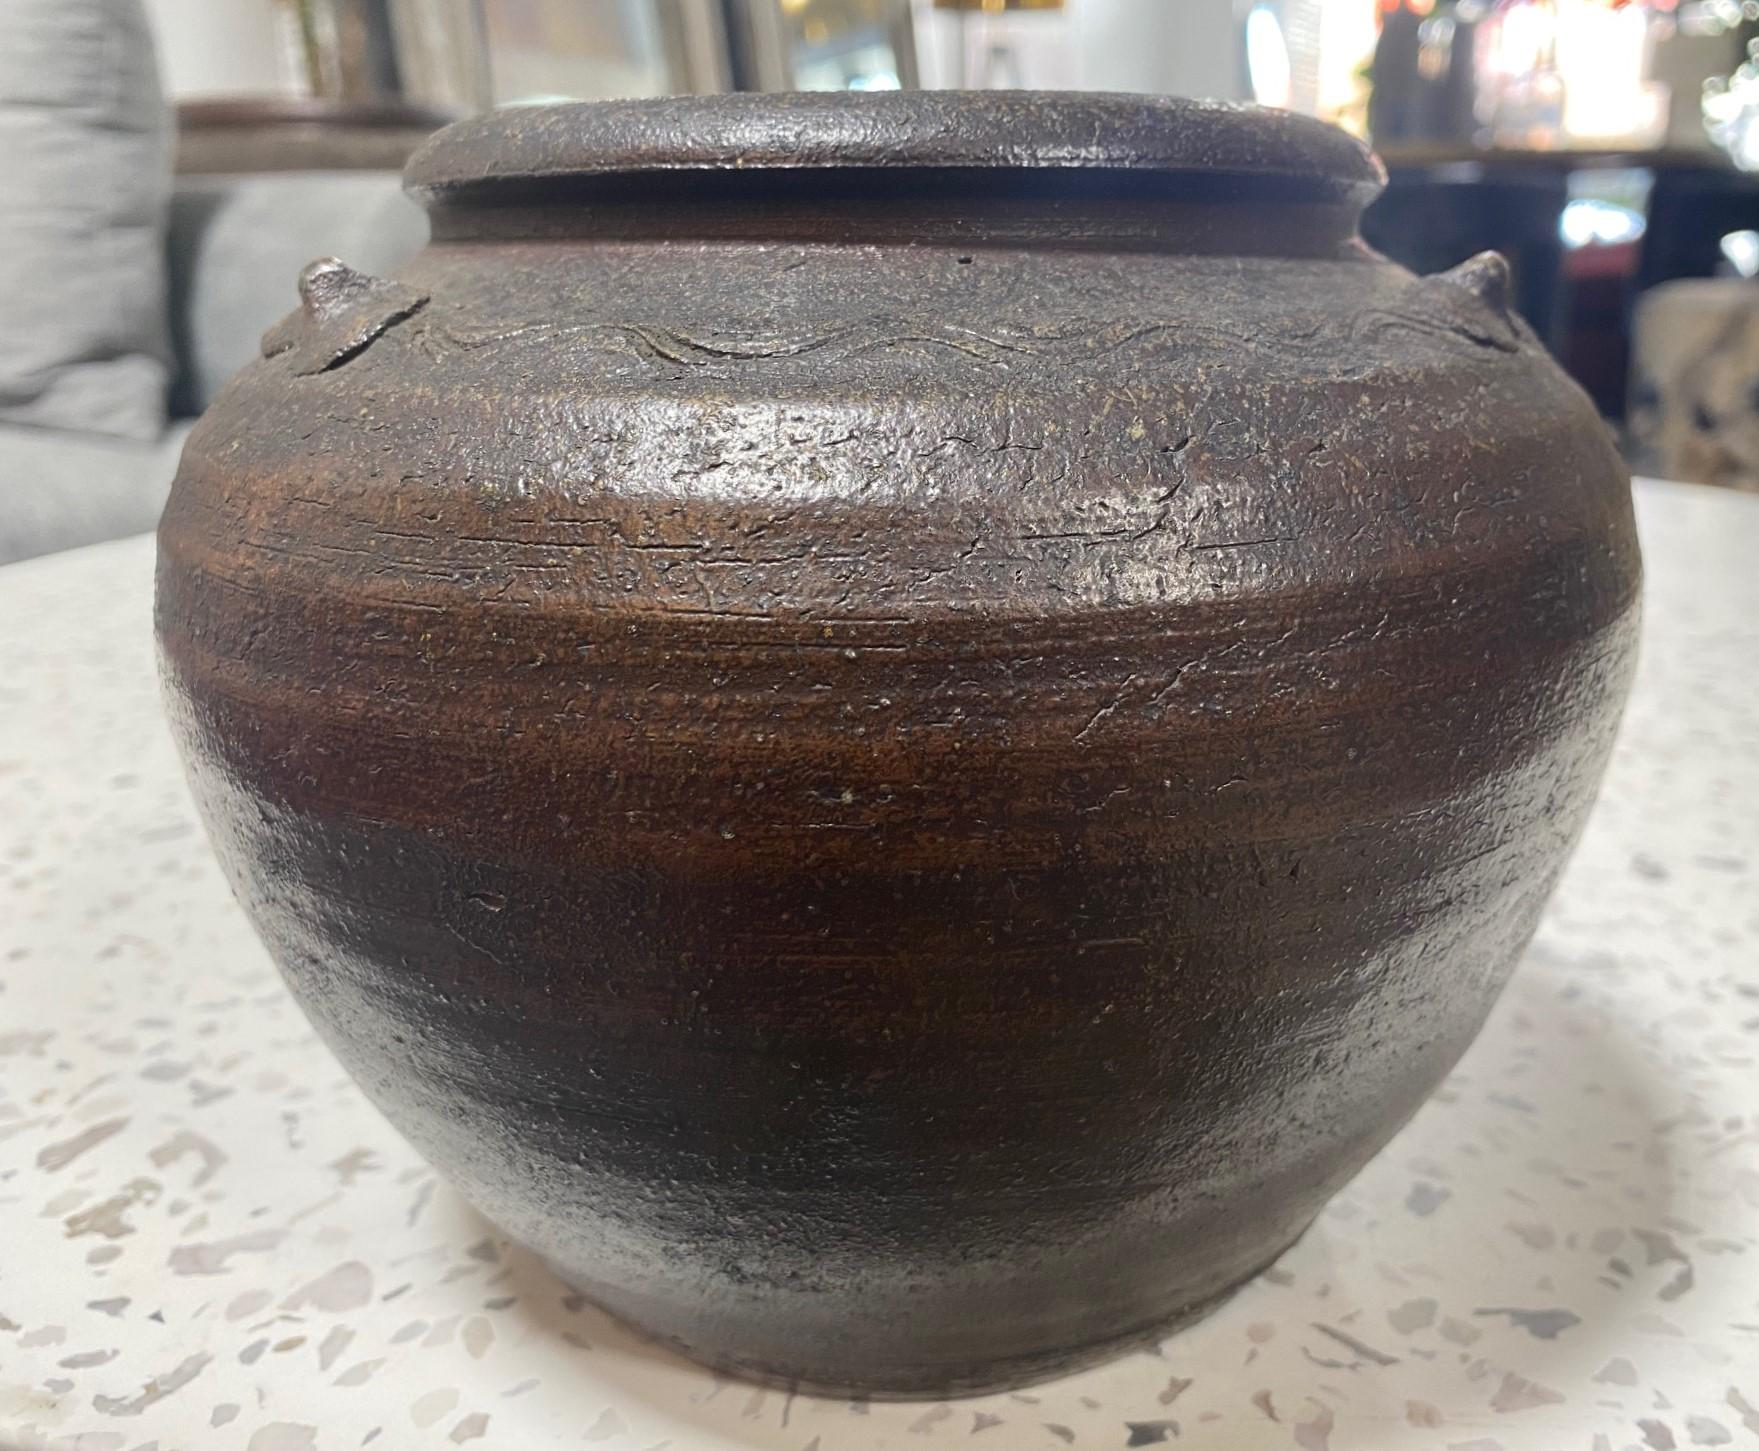 Kaneshige Toyo National Treasure Signed Japanese Bizen Pottery Tsubo Jar Vase For Sale 4